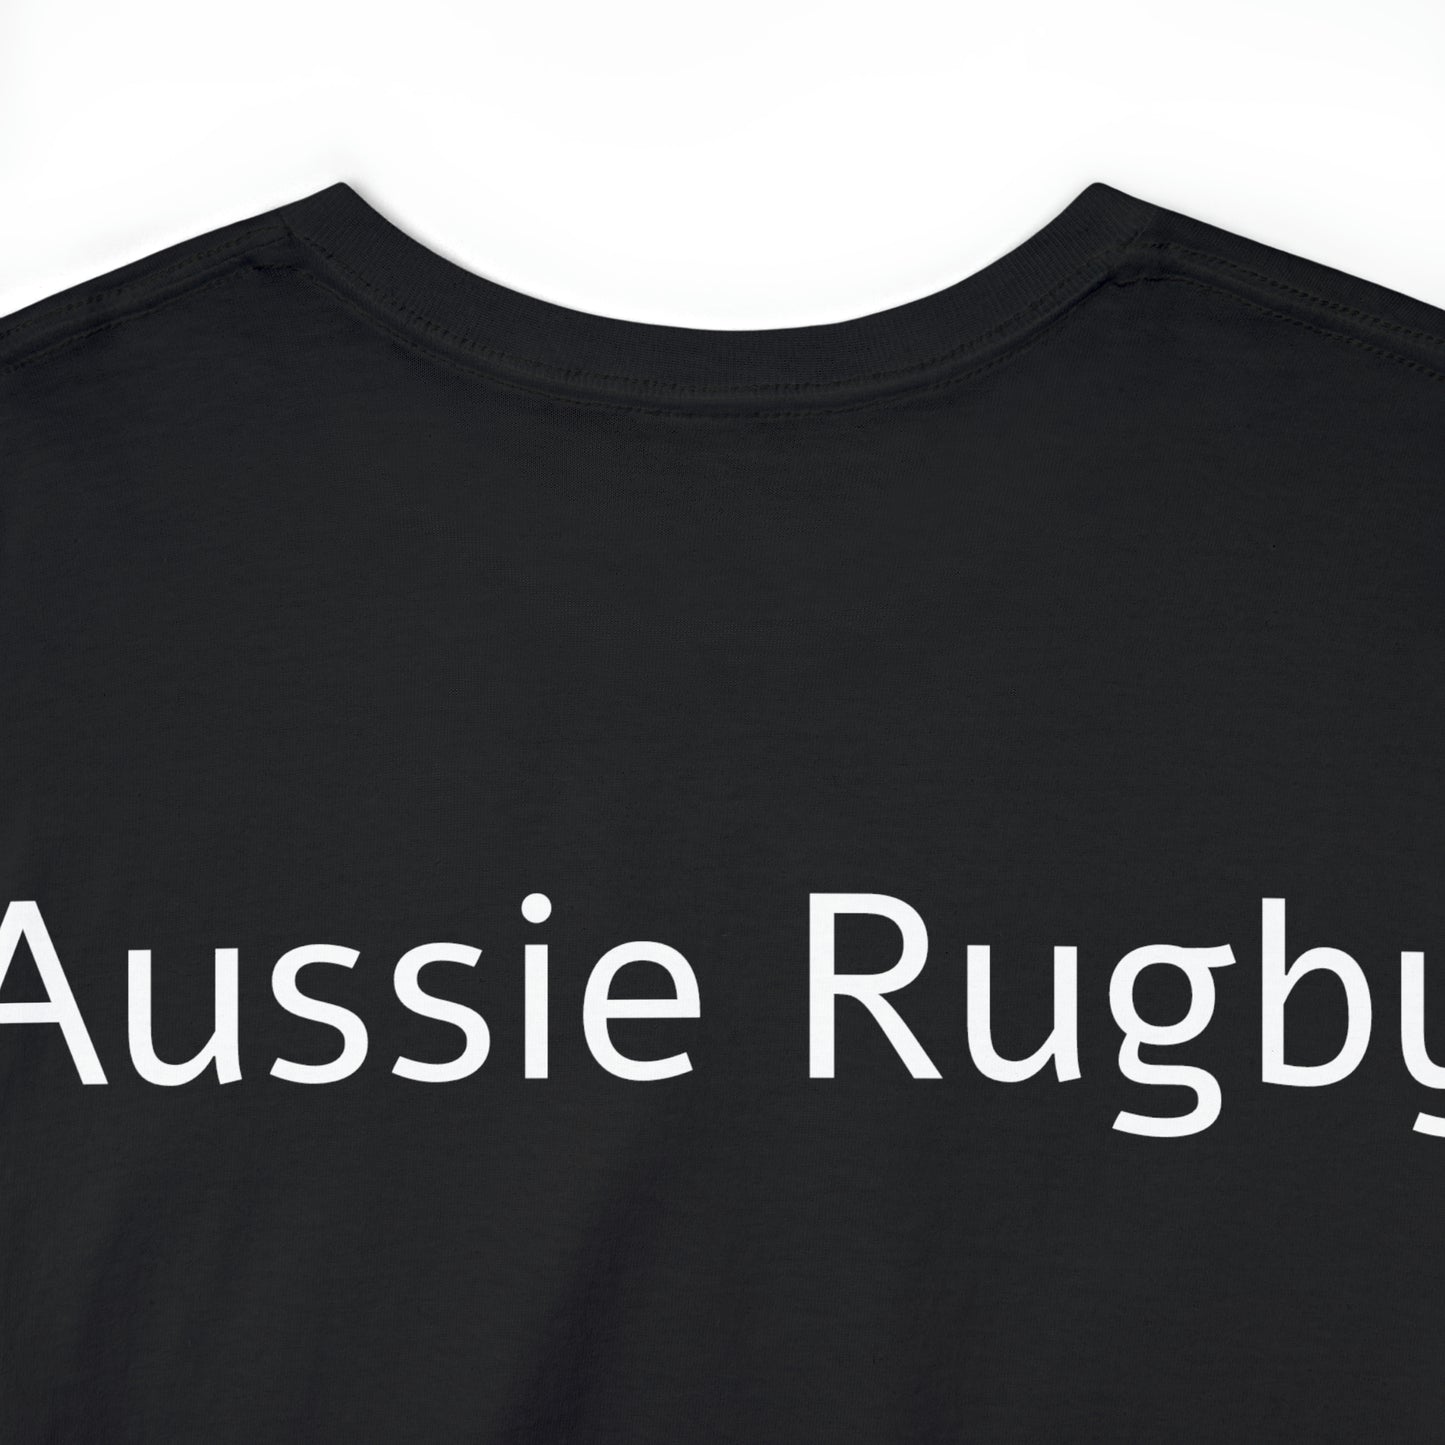 Aussie Aussie Aussie - black shirts